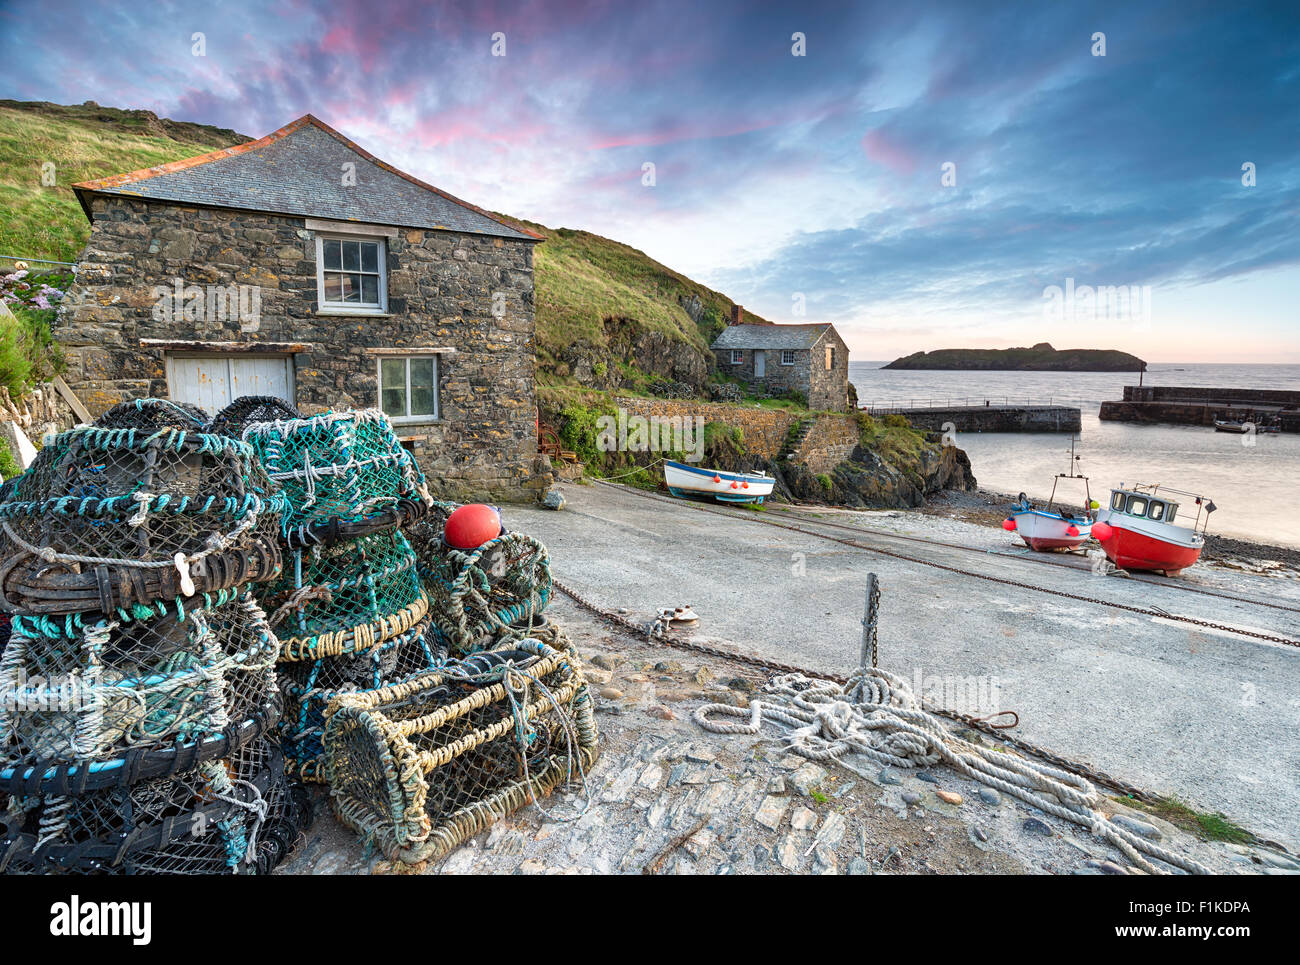 Tramonto a Mullion Cove, un piccolo villaggio di pescatori sulla penisola di Lizard sulla costa della Cornovaglia Foto Stock